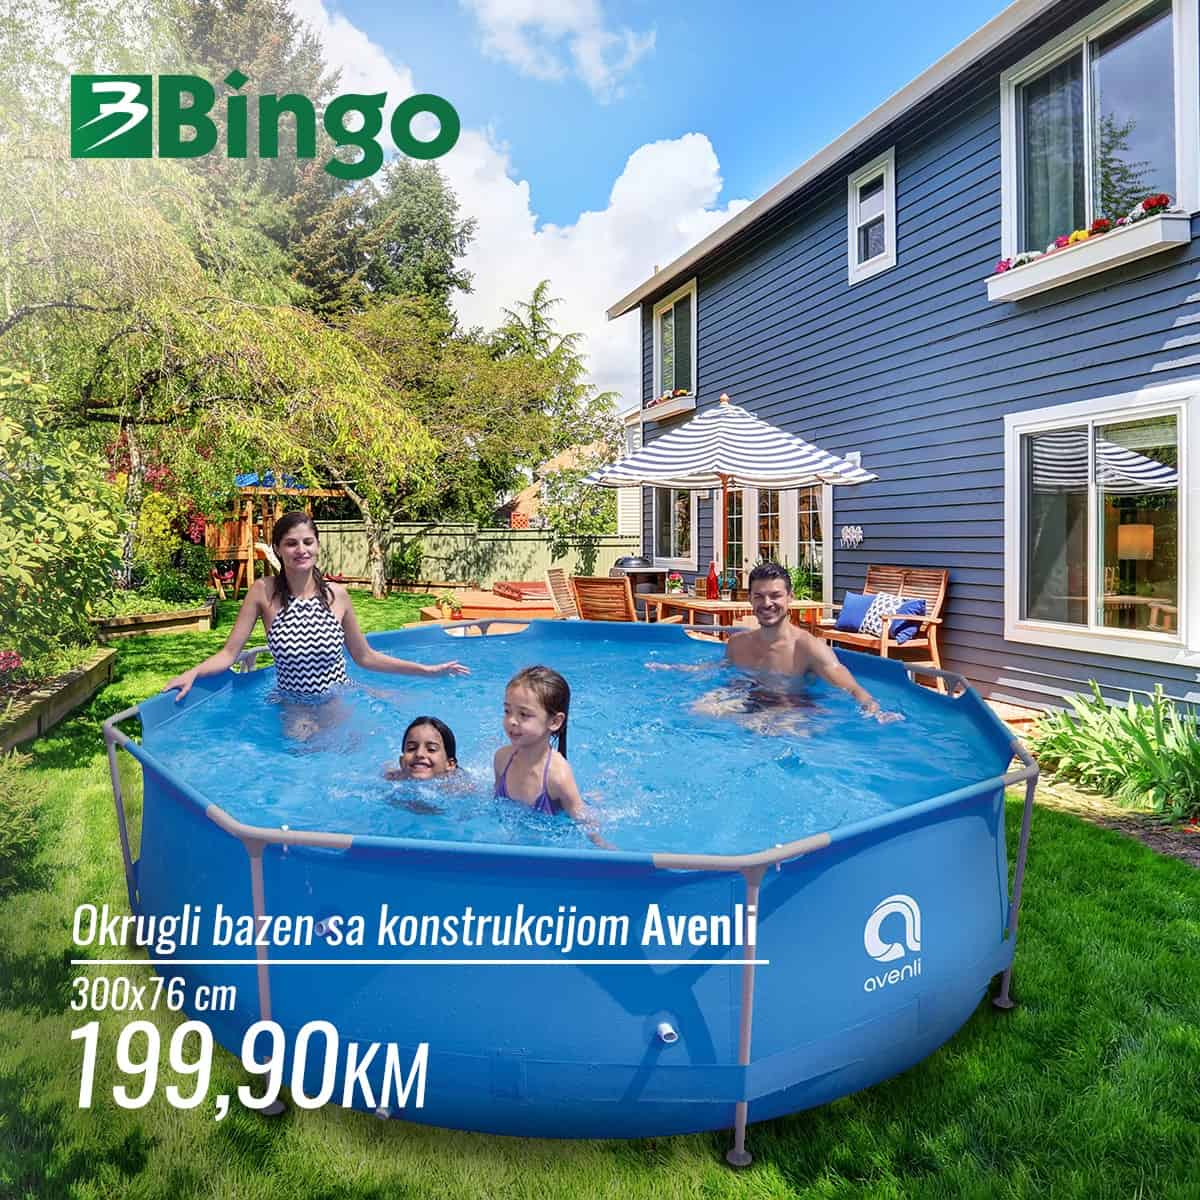 U Bingo prodavnicama pronaci cete sniženje bazena. Akcijske cijene okruglog bazena sa konstrukcijom Avenli 199,90 KM